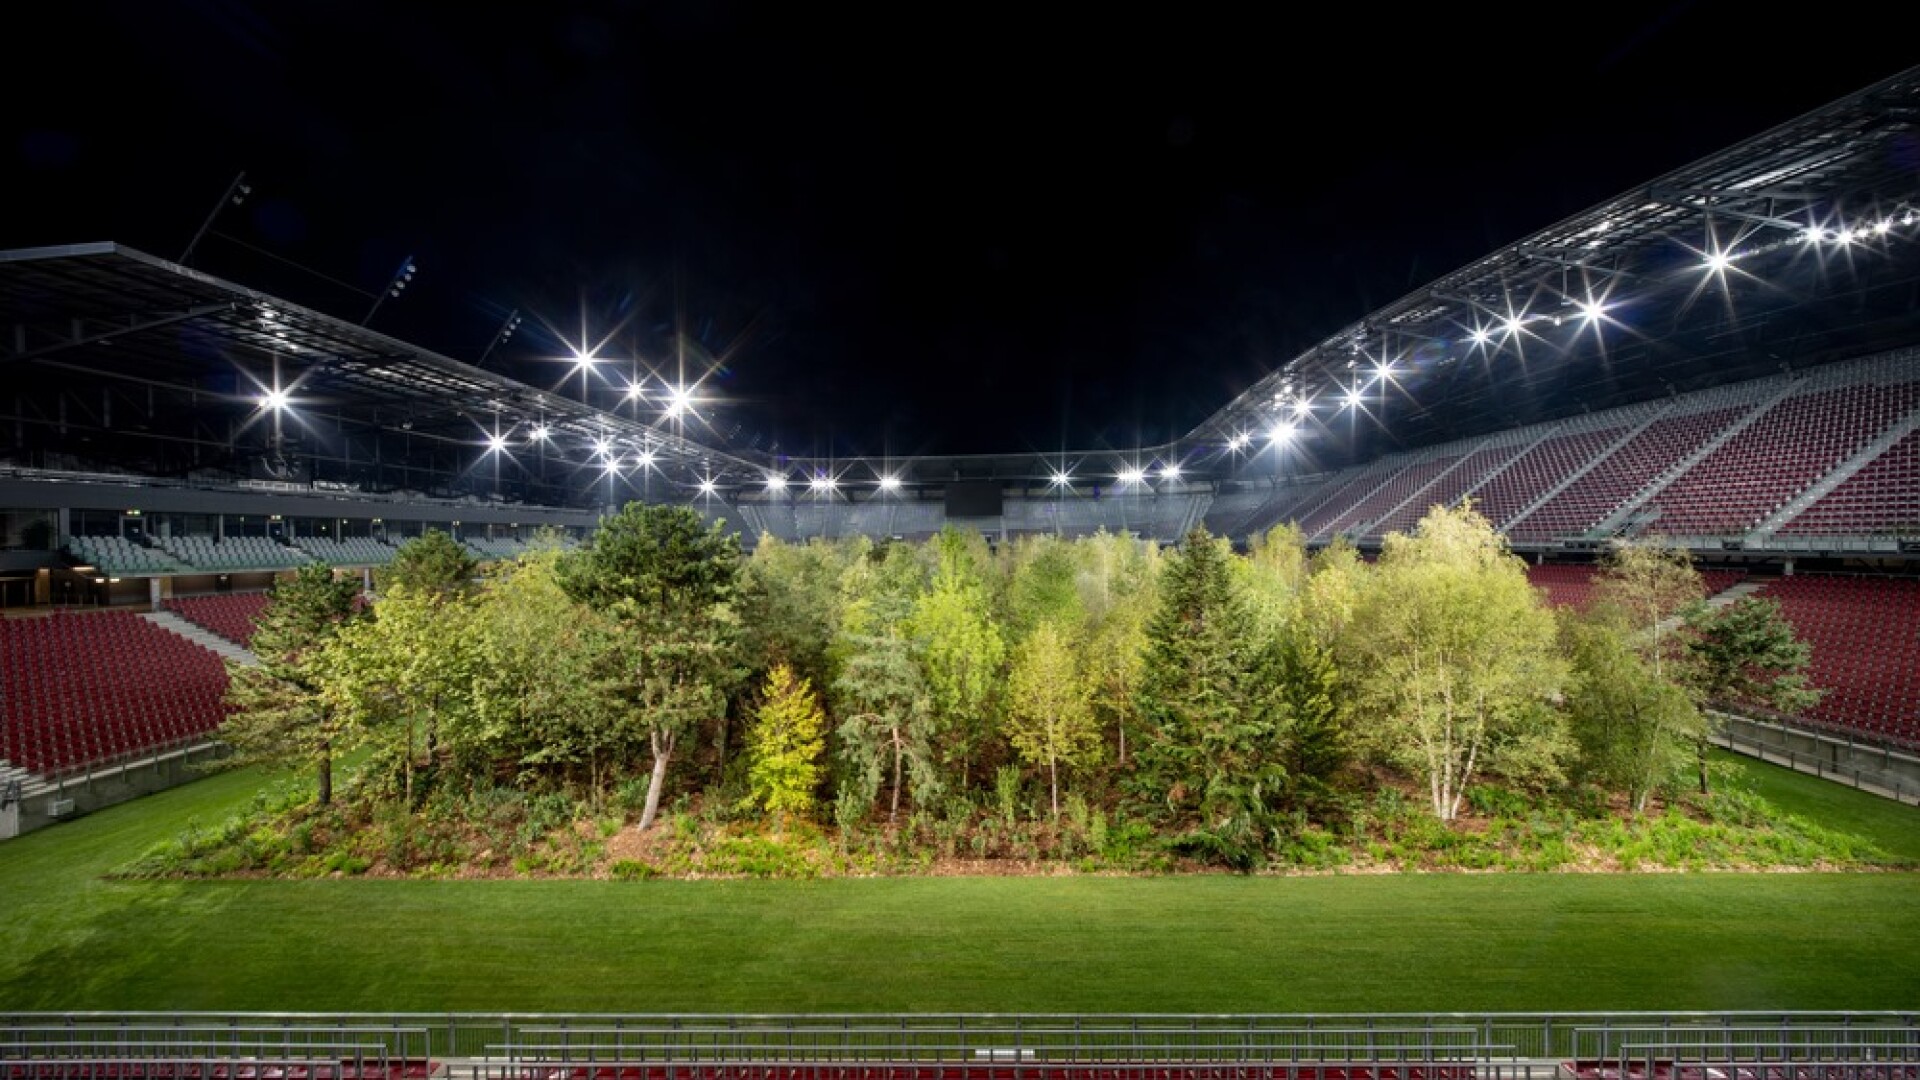 Gazonul unui stadion a fost înlocuit cu o pădure